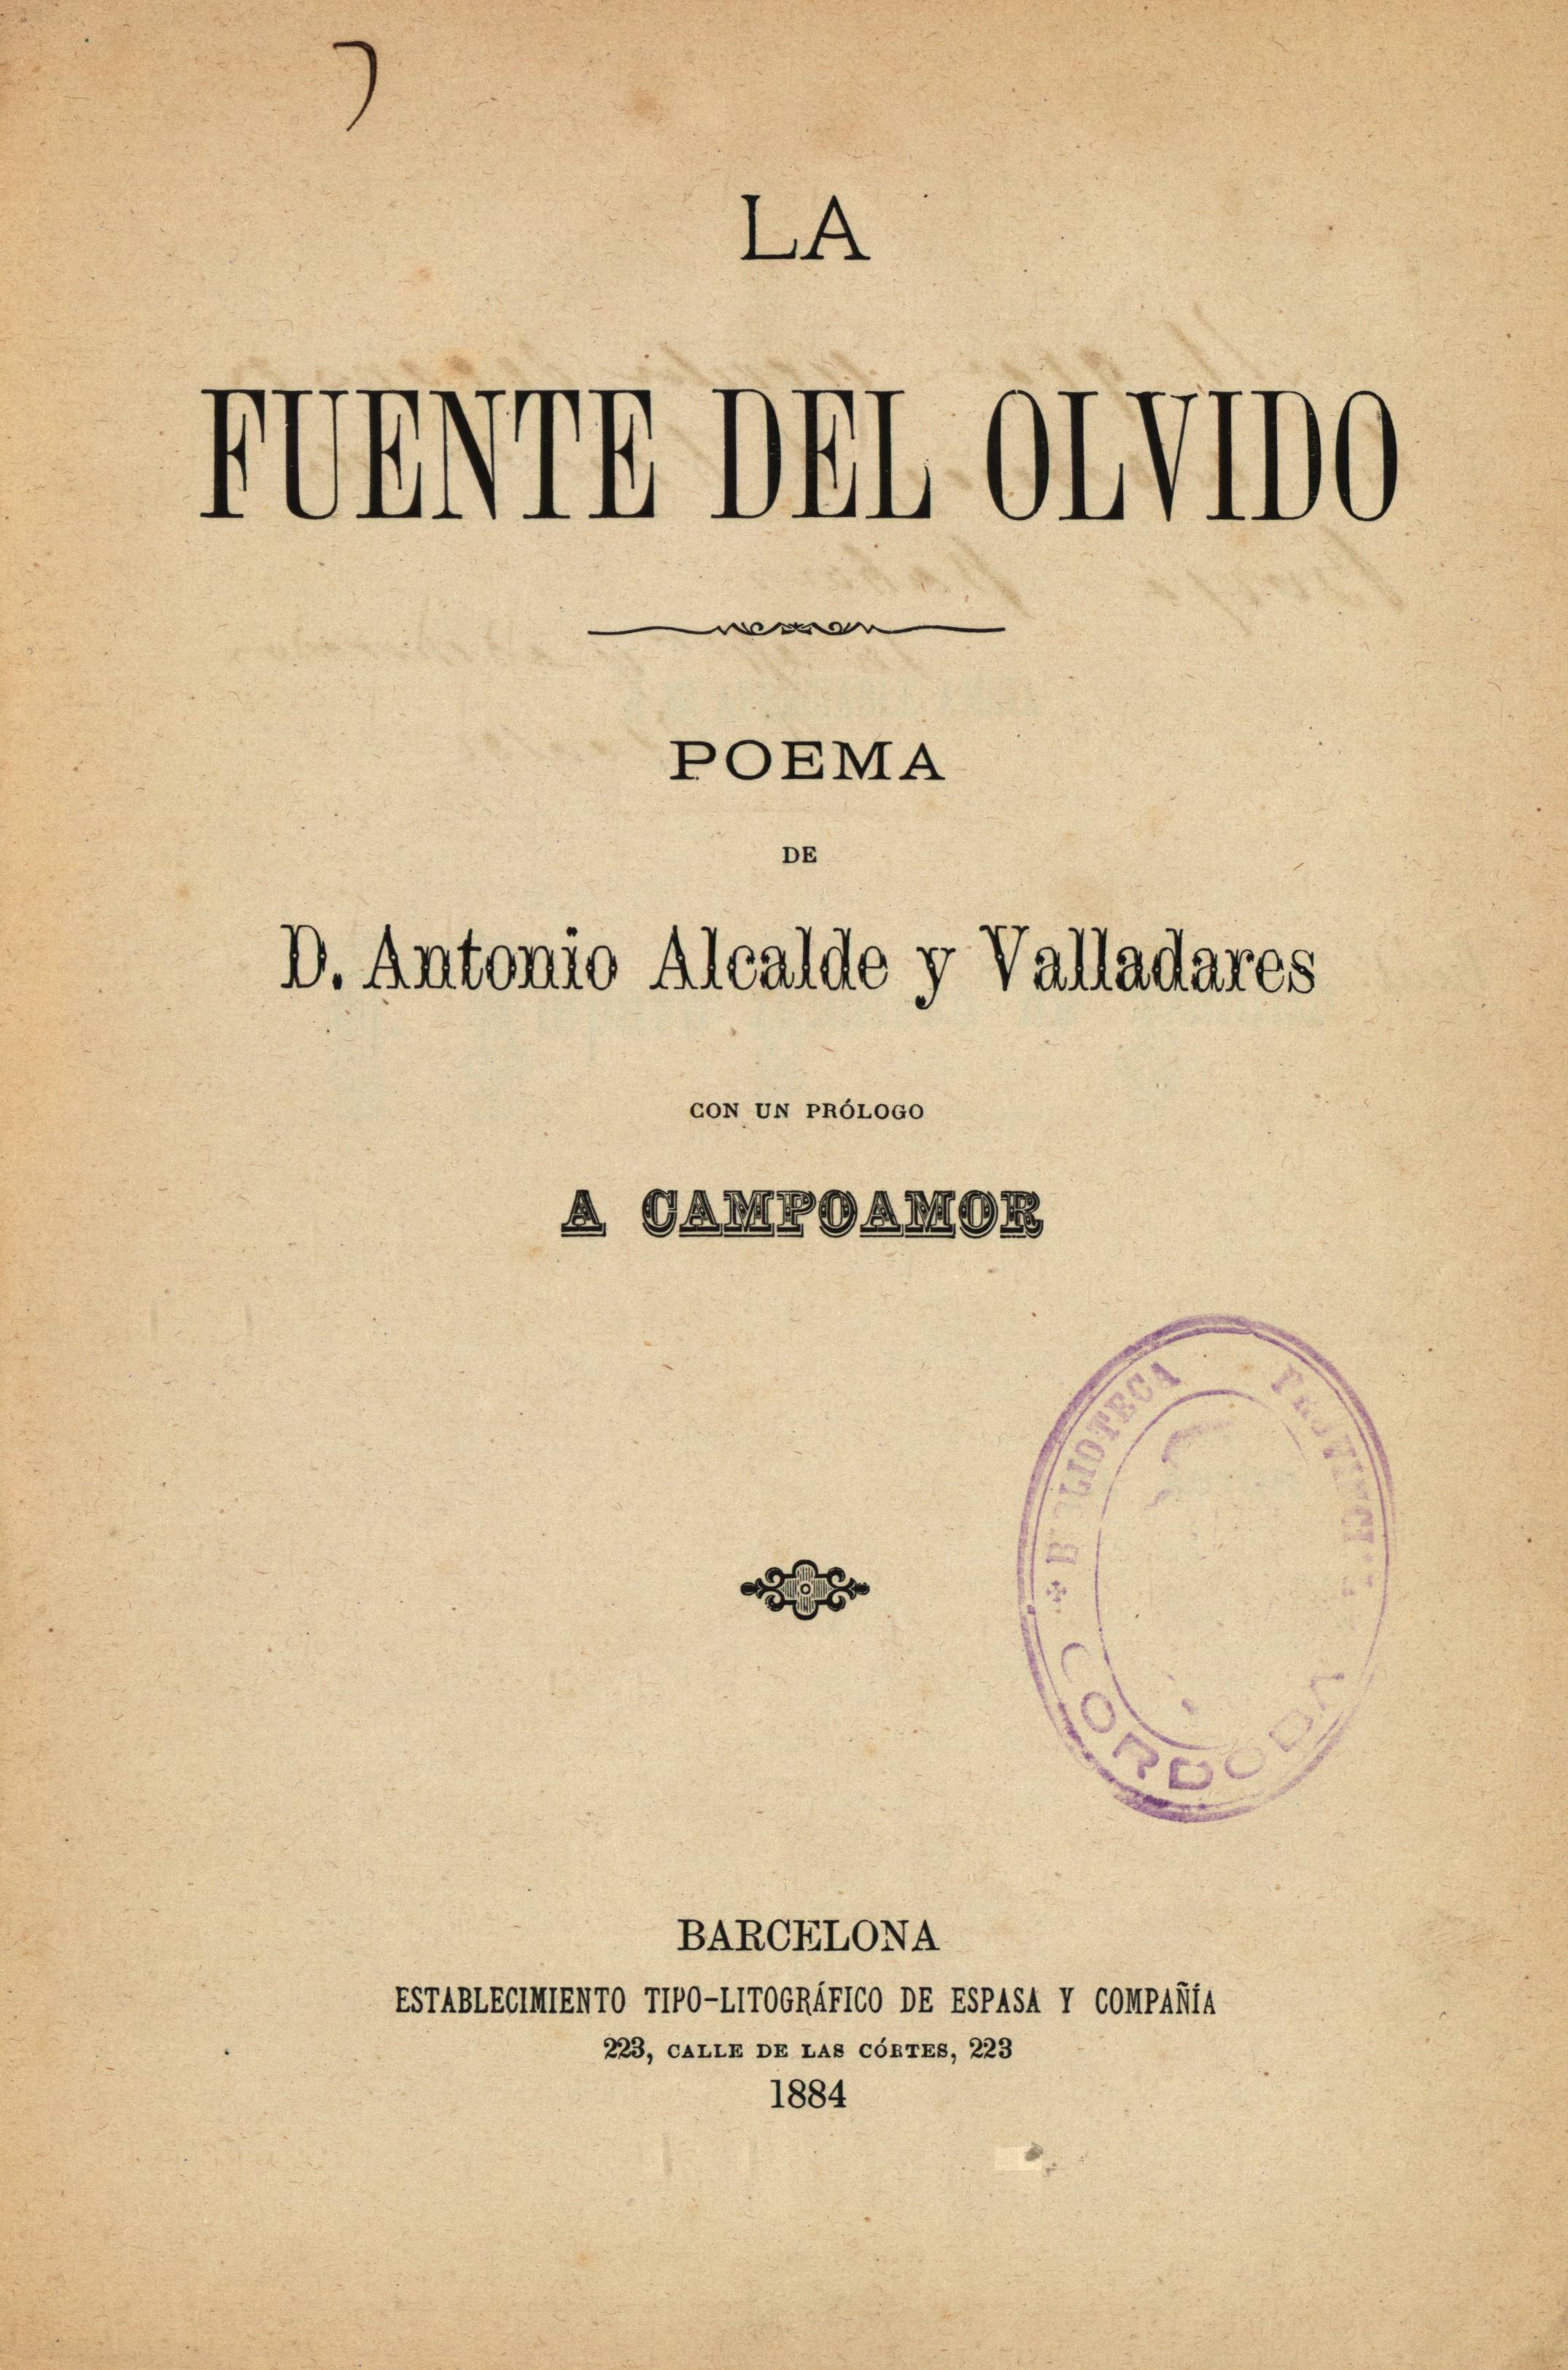 La fuente del olvido. Poema de D. Antonio Alcalde y Valladares